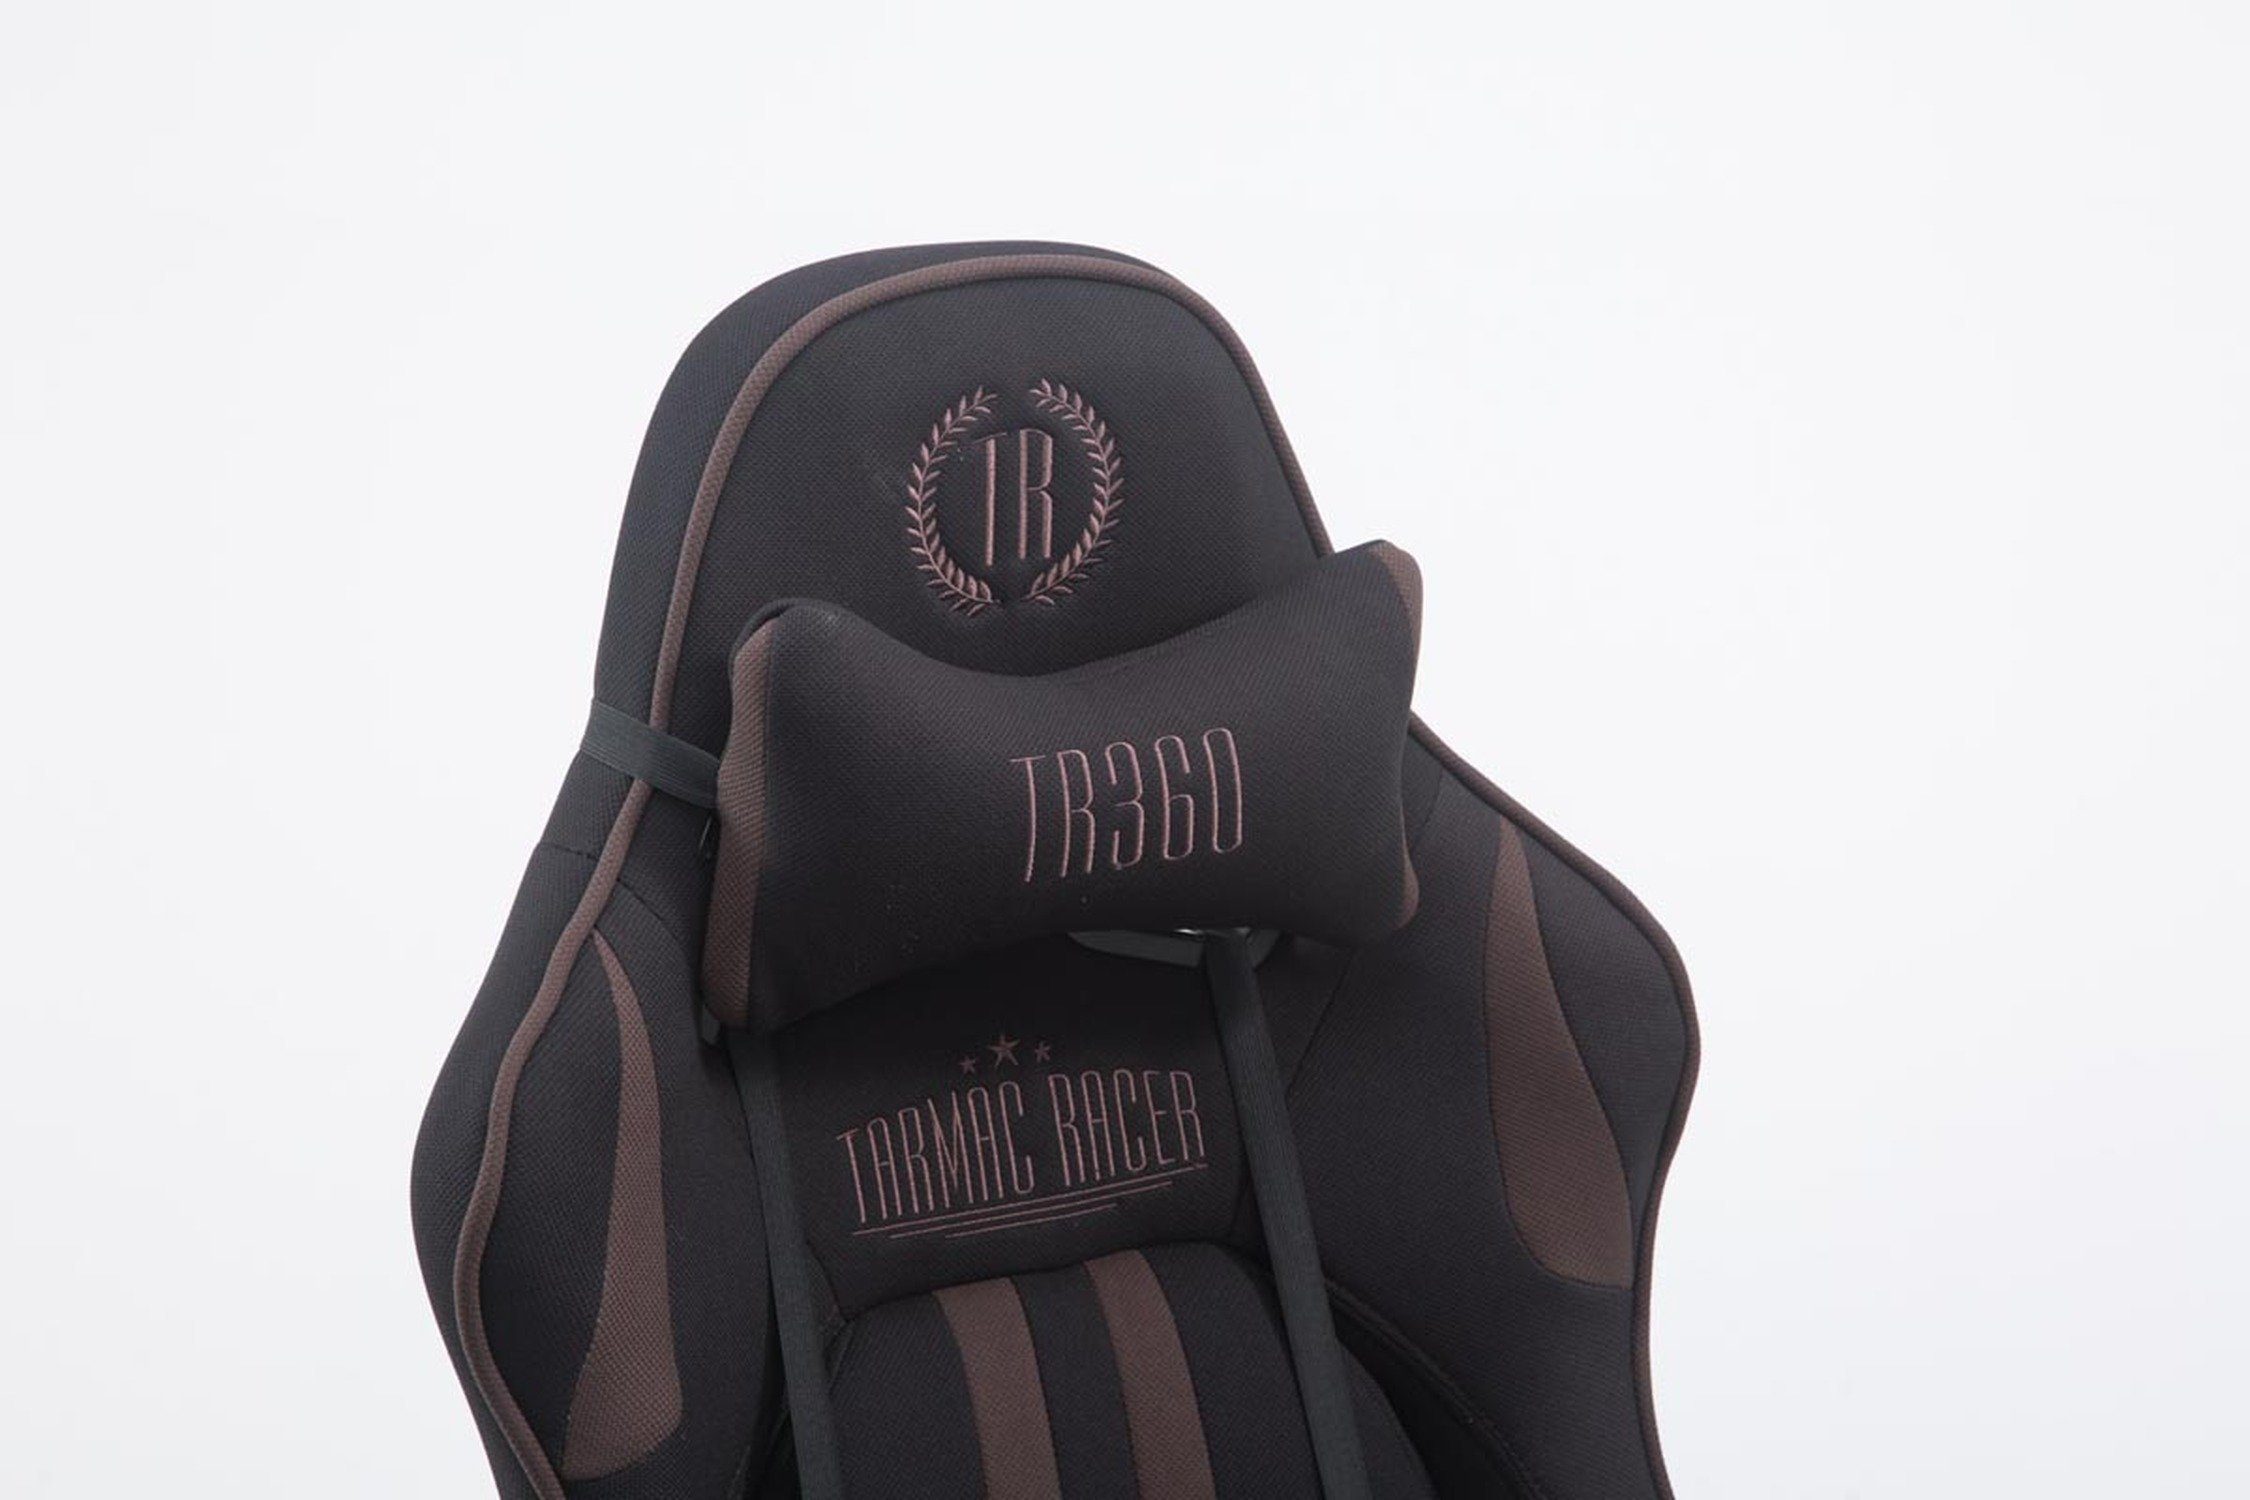 TPFLiving Gaming-Stuhl Limitless 360° und mit bequemer Gestell: - drehbar Gamingstuhl, Racingstuhl, Rückenlehne Drehstuhl, höhenverstellbar Metall Sitzfläche: Stoff Chefsessel), schwarz/braun - chrom (Schreibtischstuhl